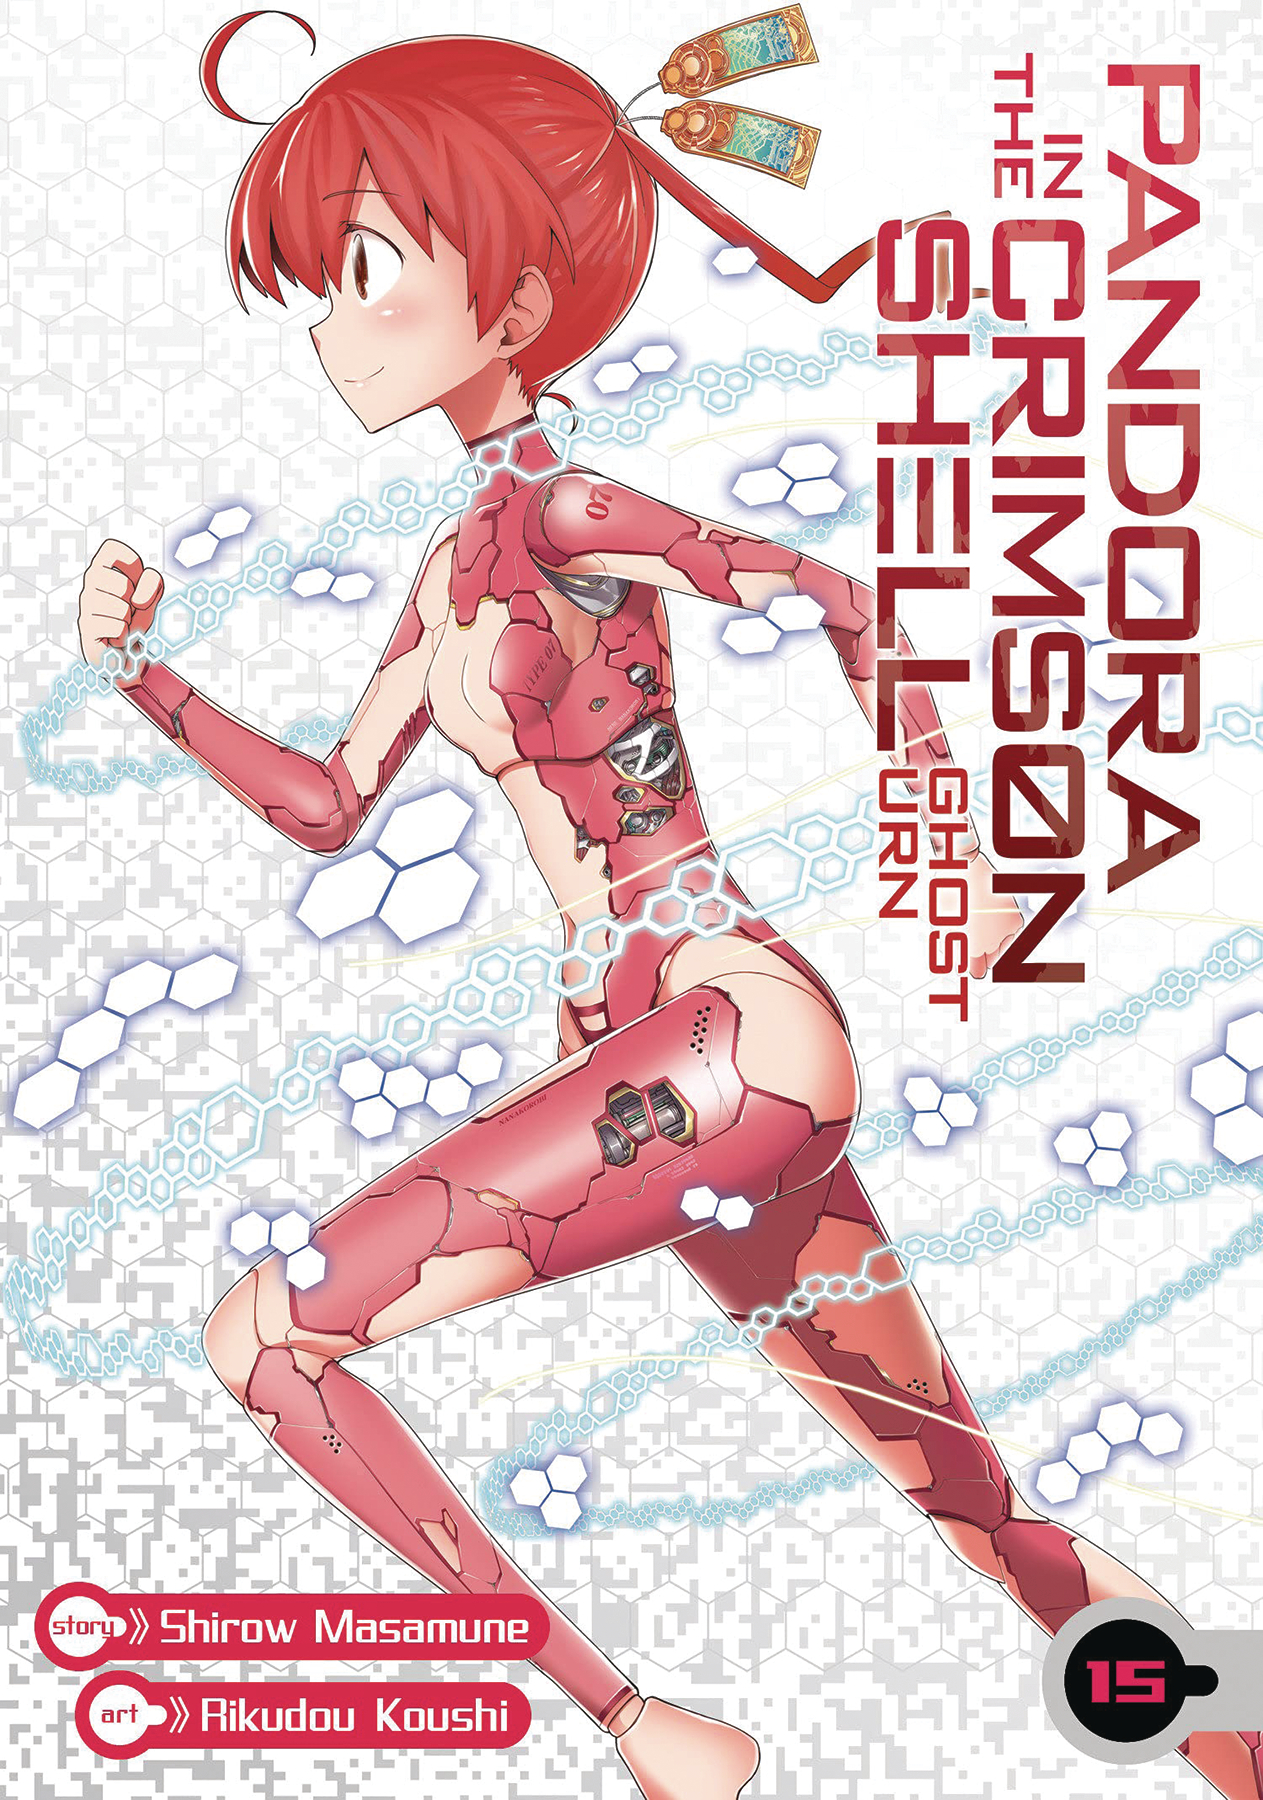 Pandora of the Crimson Shell: Ghost Urn Manga Volume 15 (Mature)